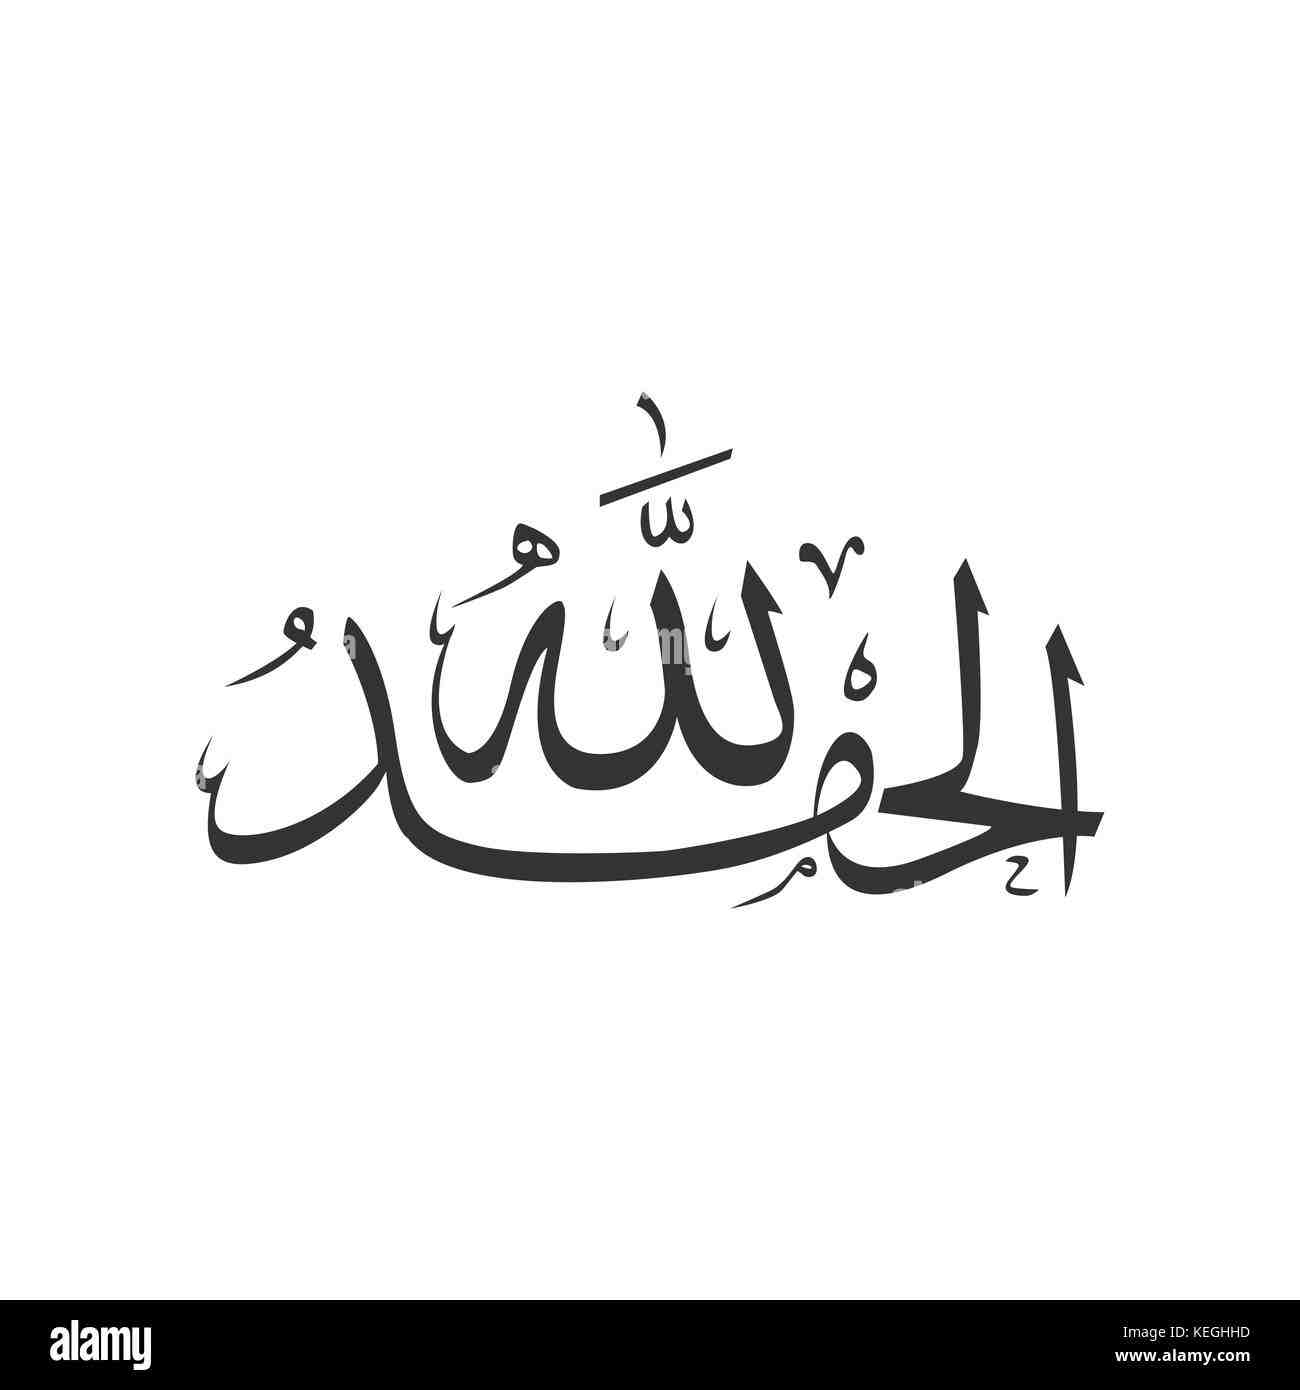 Comment écrire Allah en arabe ?